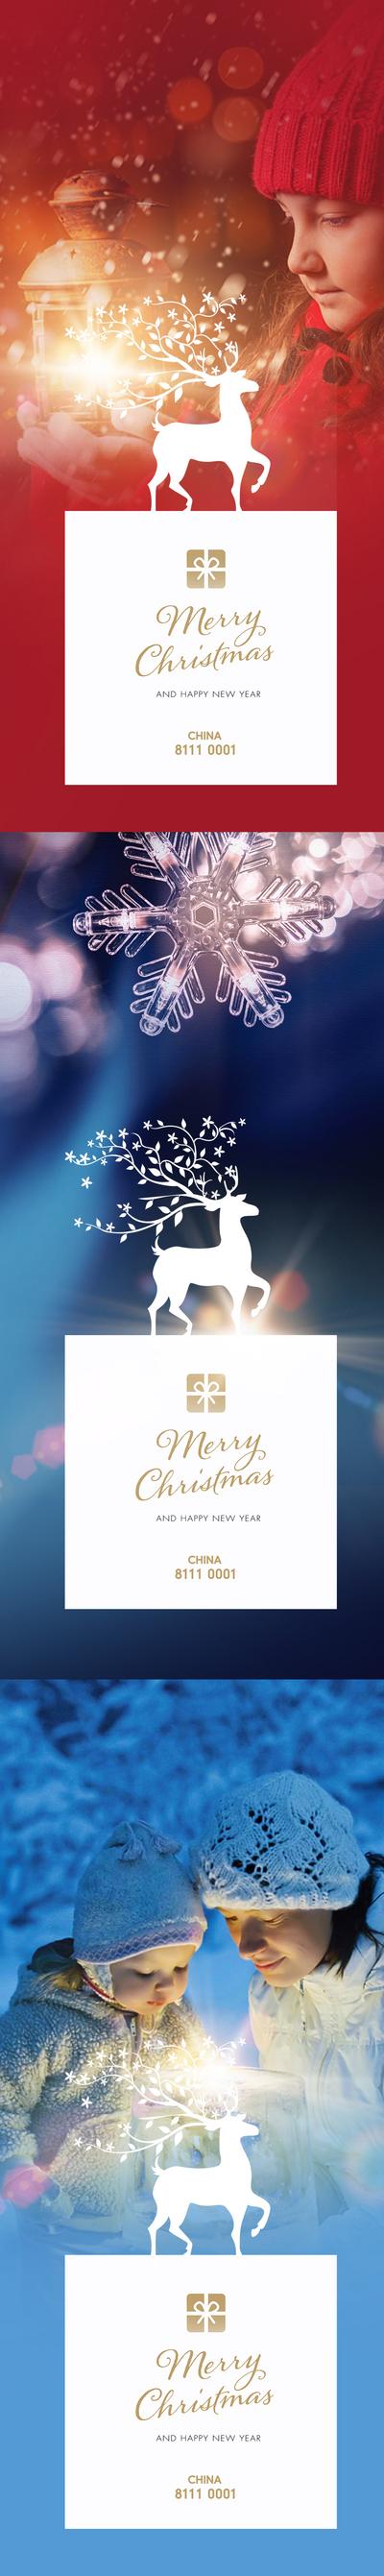 南门网 海报  房地产  圣诞节  系列    灯光   麋鹿   雪   雪花  母子 